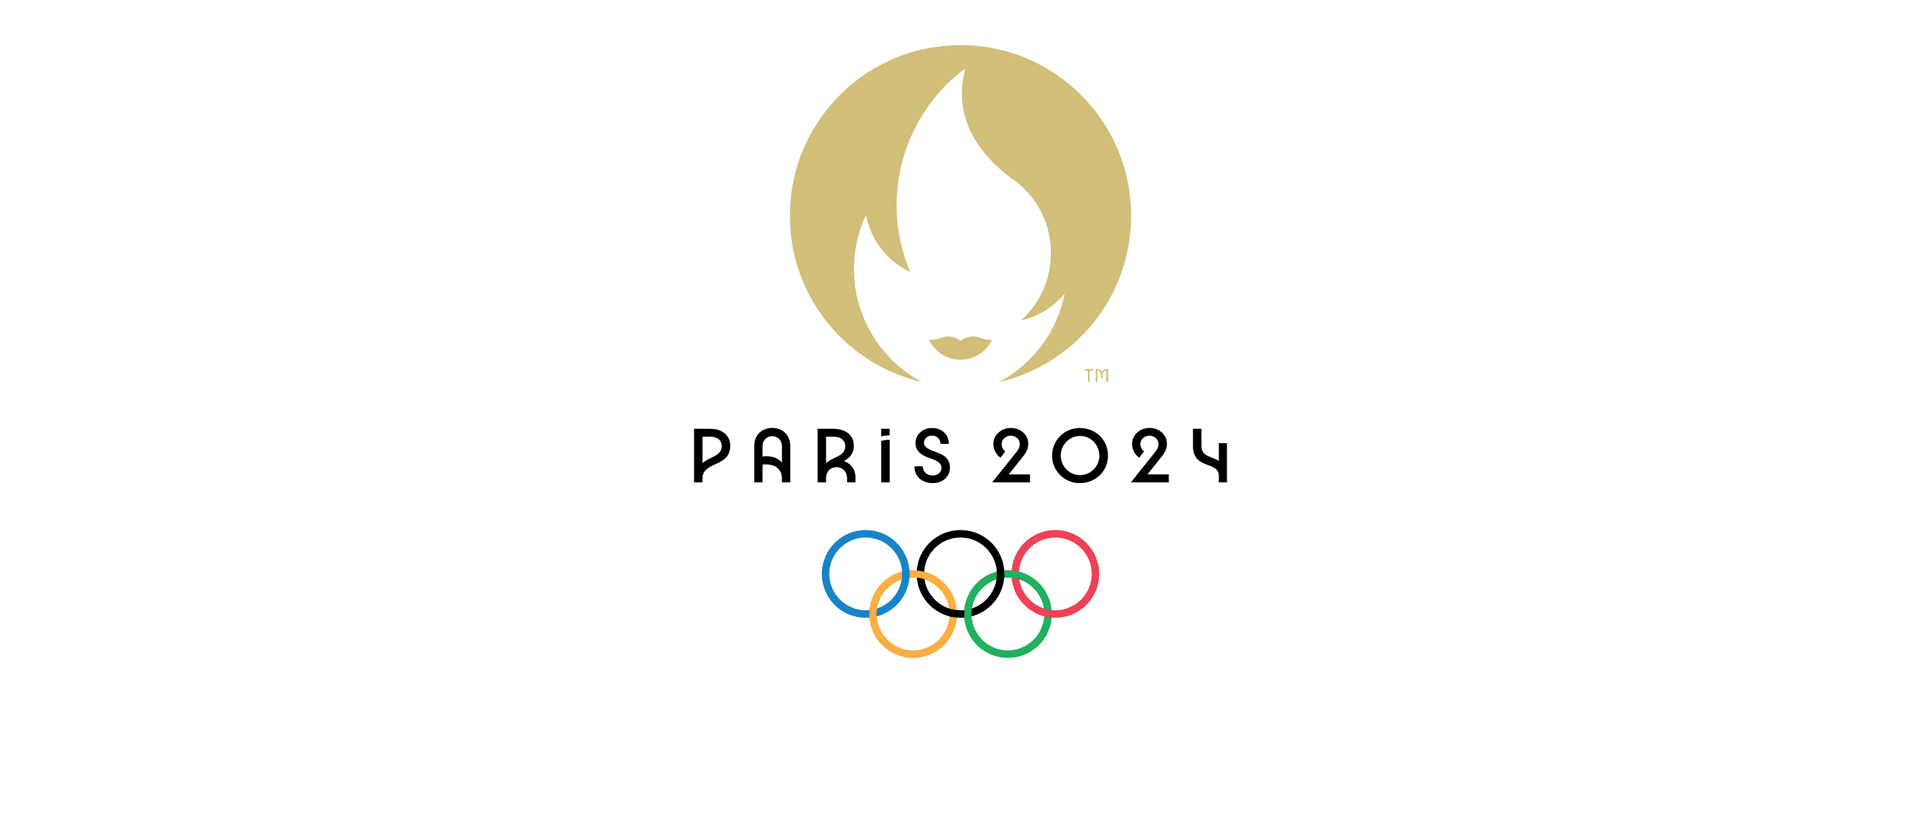 Игры 2024 википедия. Летние Олимпийские игры 2024. Олимпийских игр–2024 в Париже лого. Логотип олимпиады.